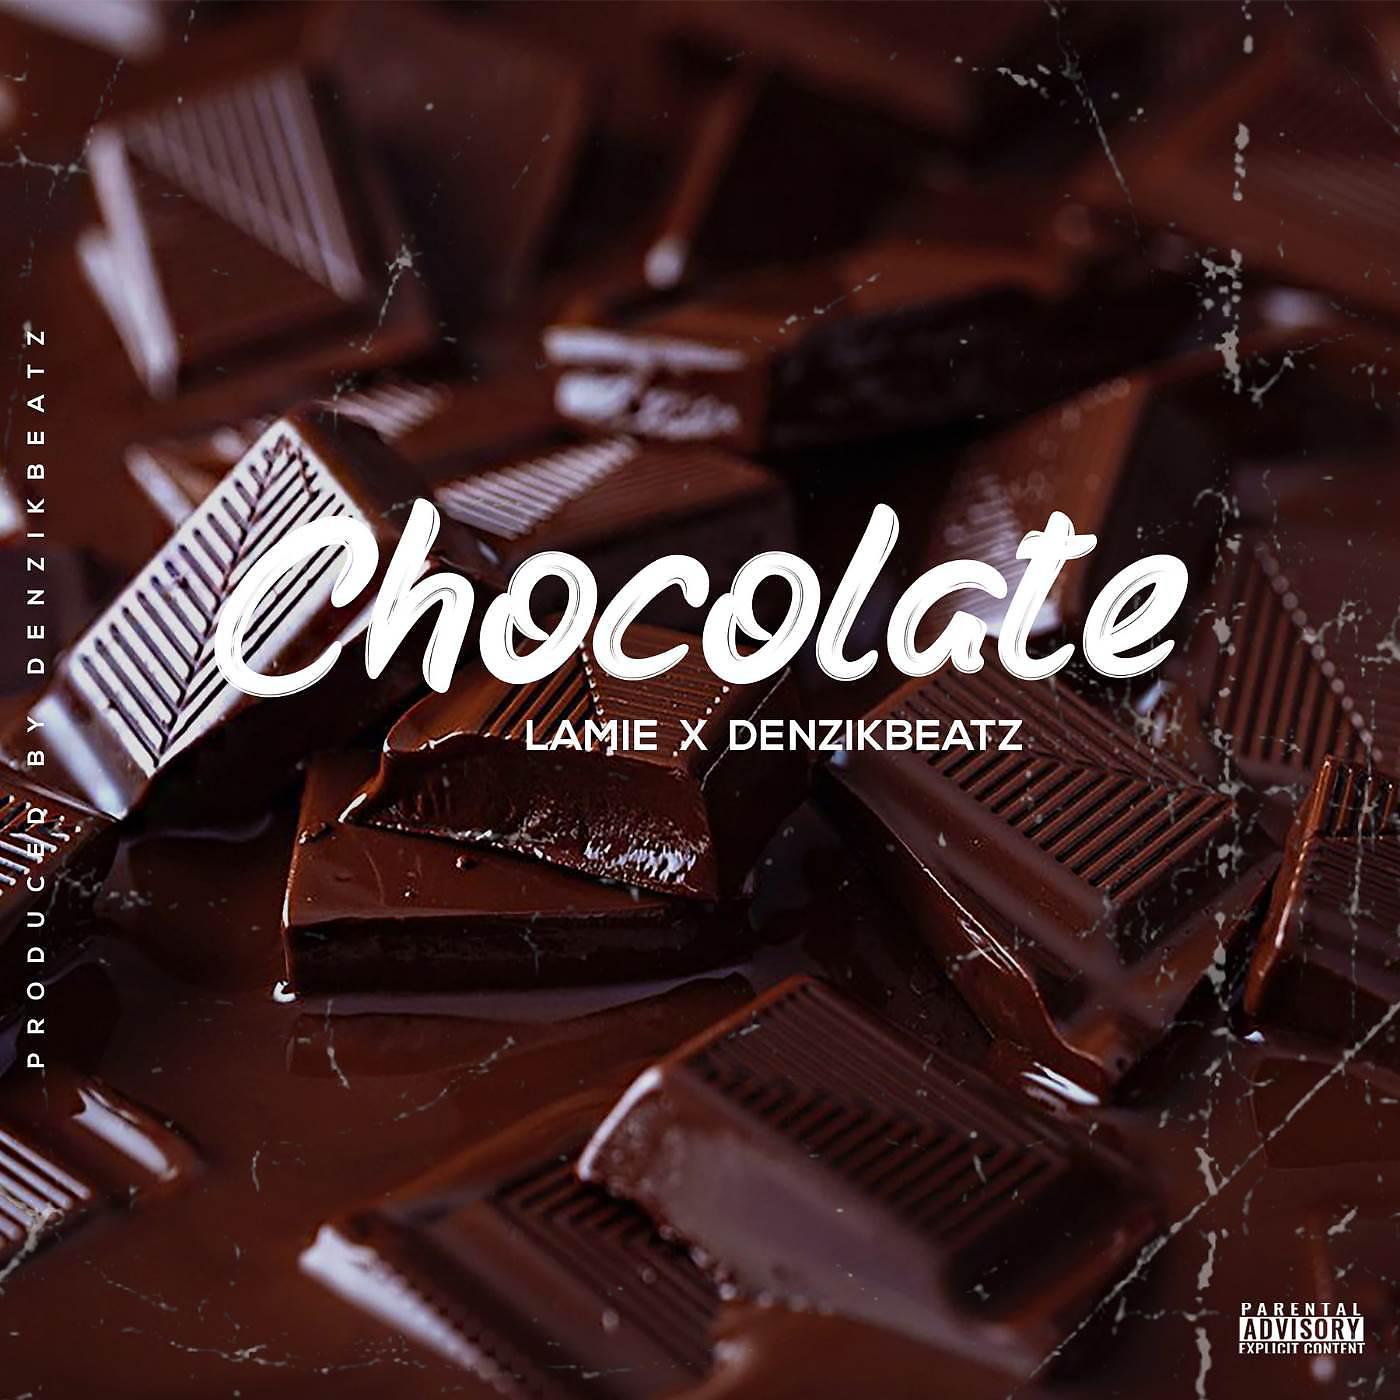 98.0 шоколад слушать. Альбом Chocolate. Альбом с шоколадом. Включи шоколадку. Шоколад слушать.